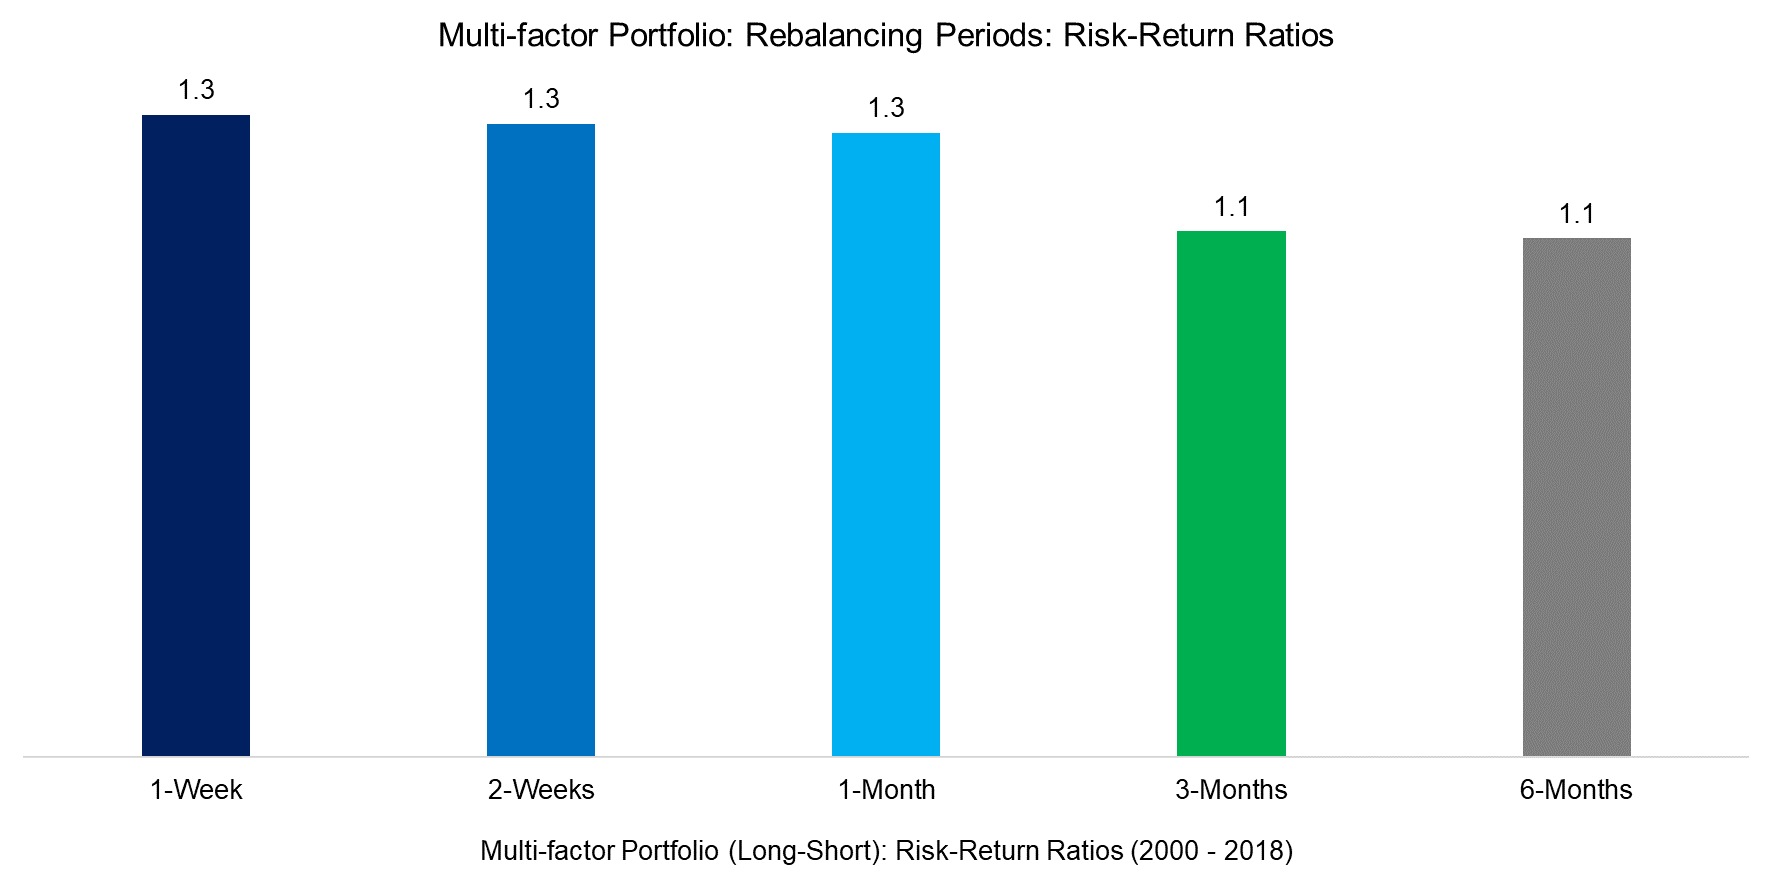 Multi-factor Portfolio Rebalancing Periods Risk-Return Ratios